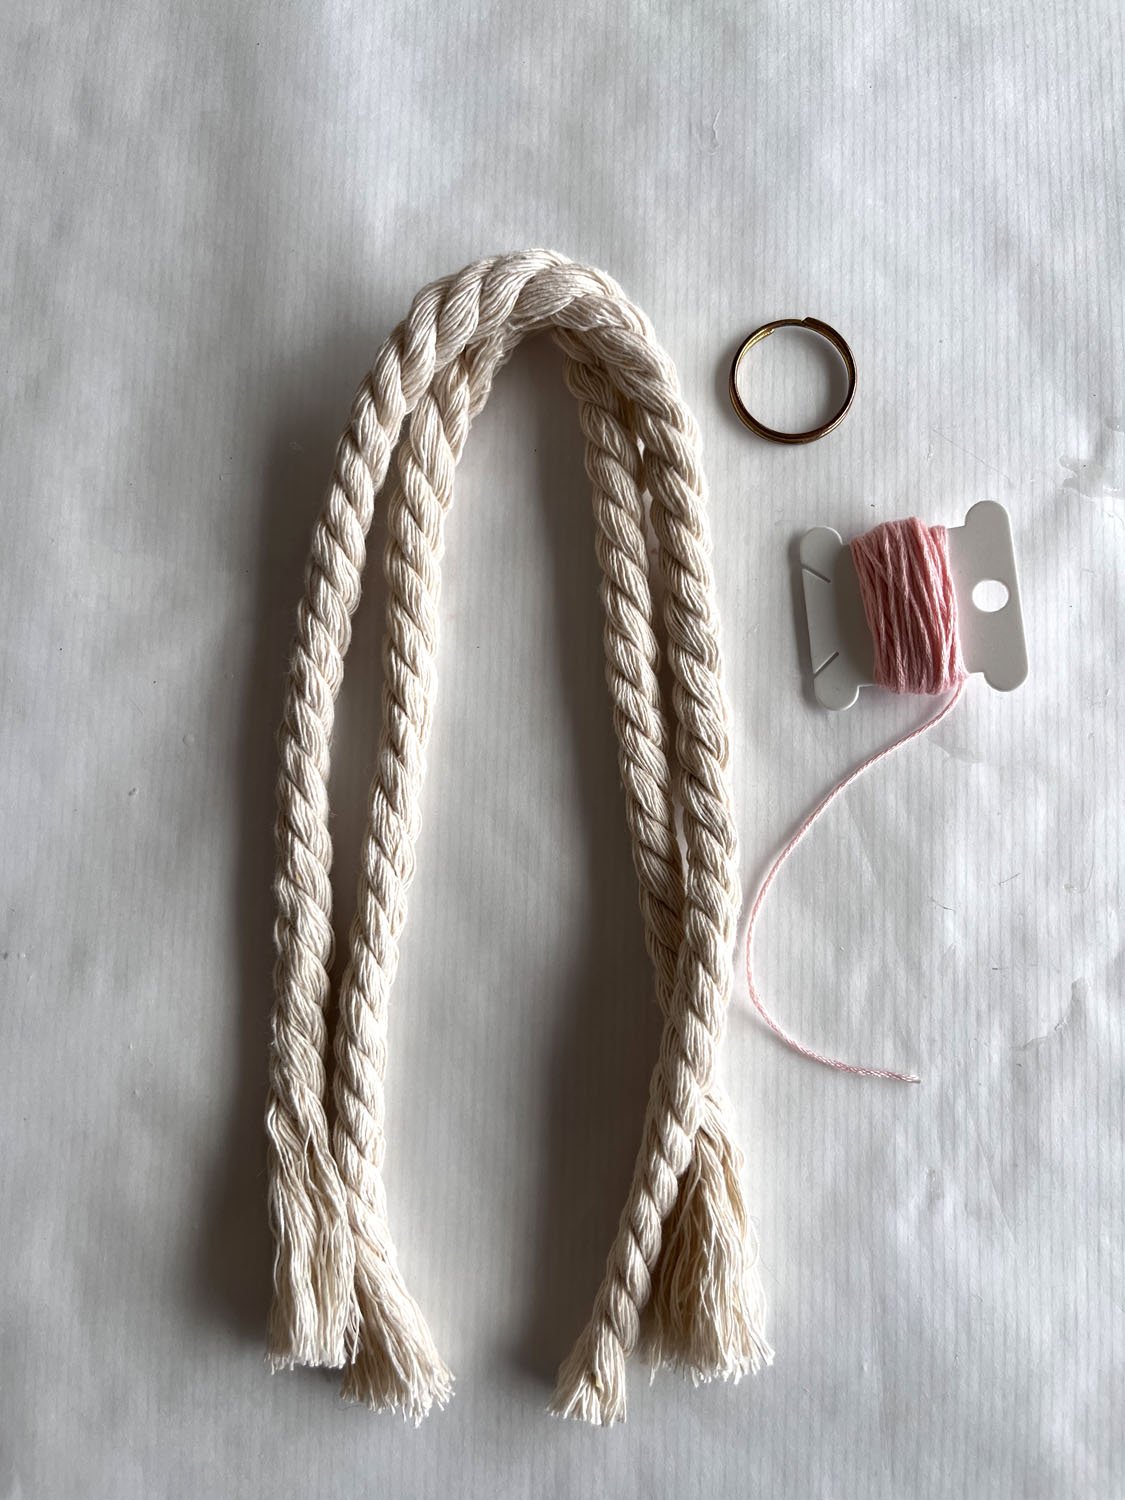 Porte-clés en corde ref corde tressée avec manille au